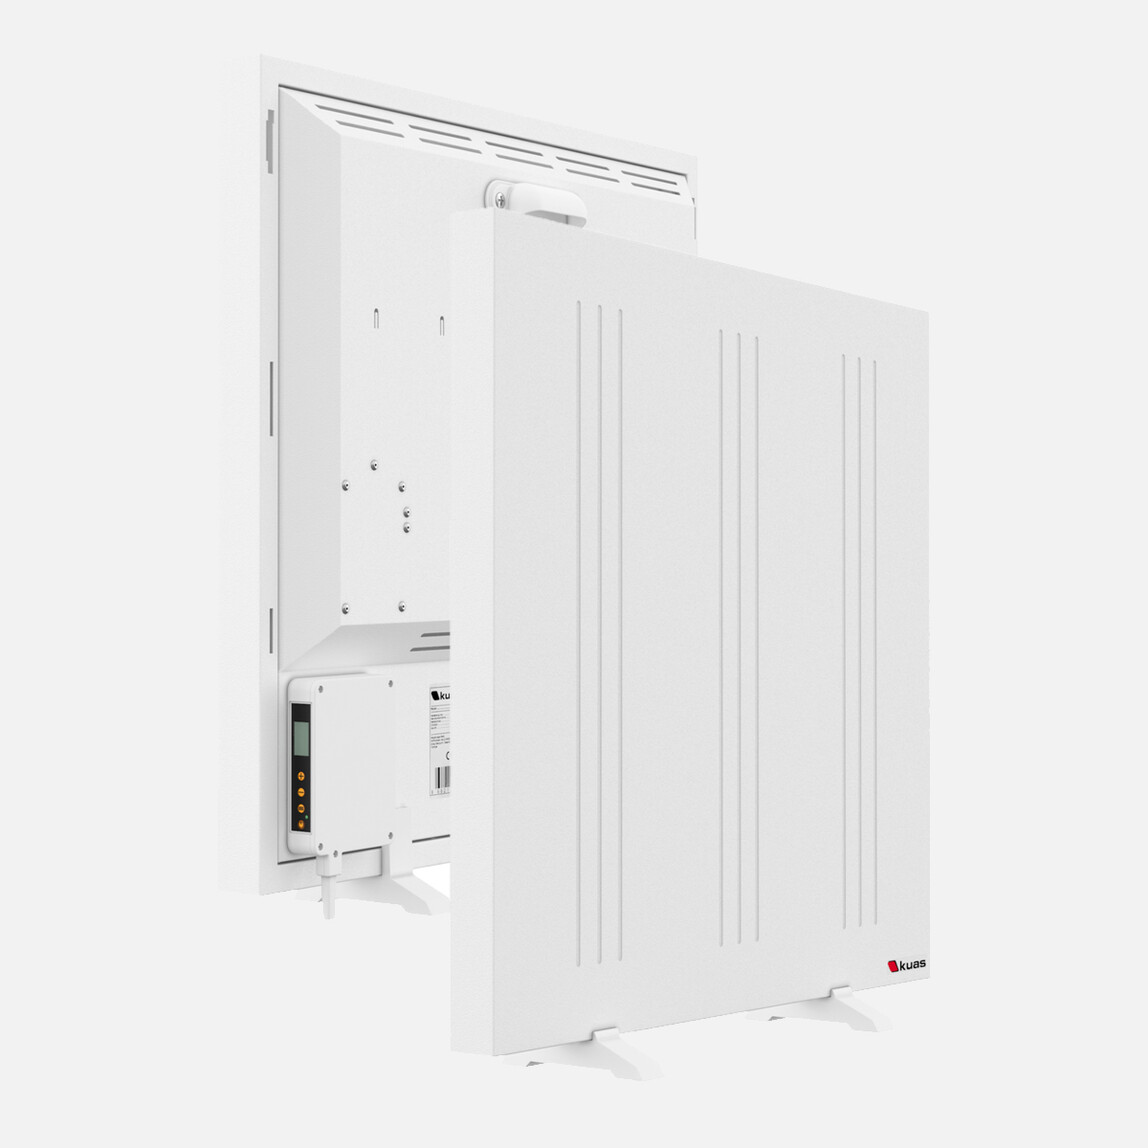    Kuas Conveco Easyline Dijital Termostatlı 1000W Elektrikli Panel Isıtıcı  